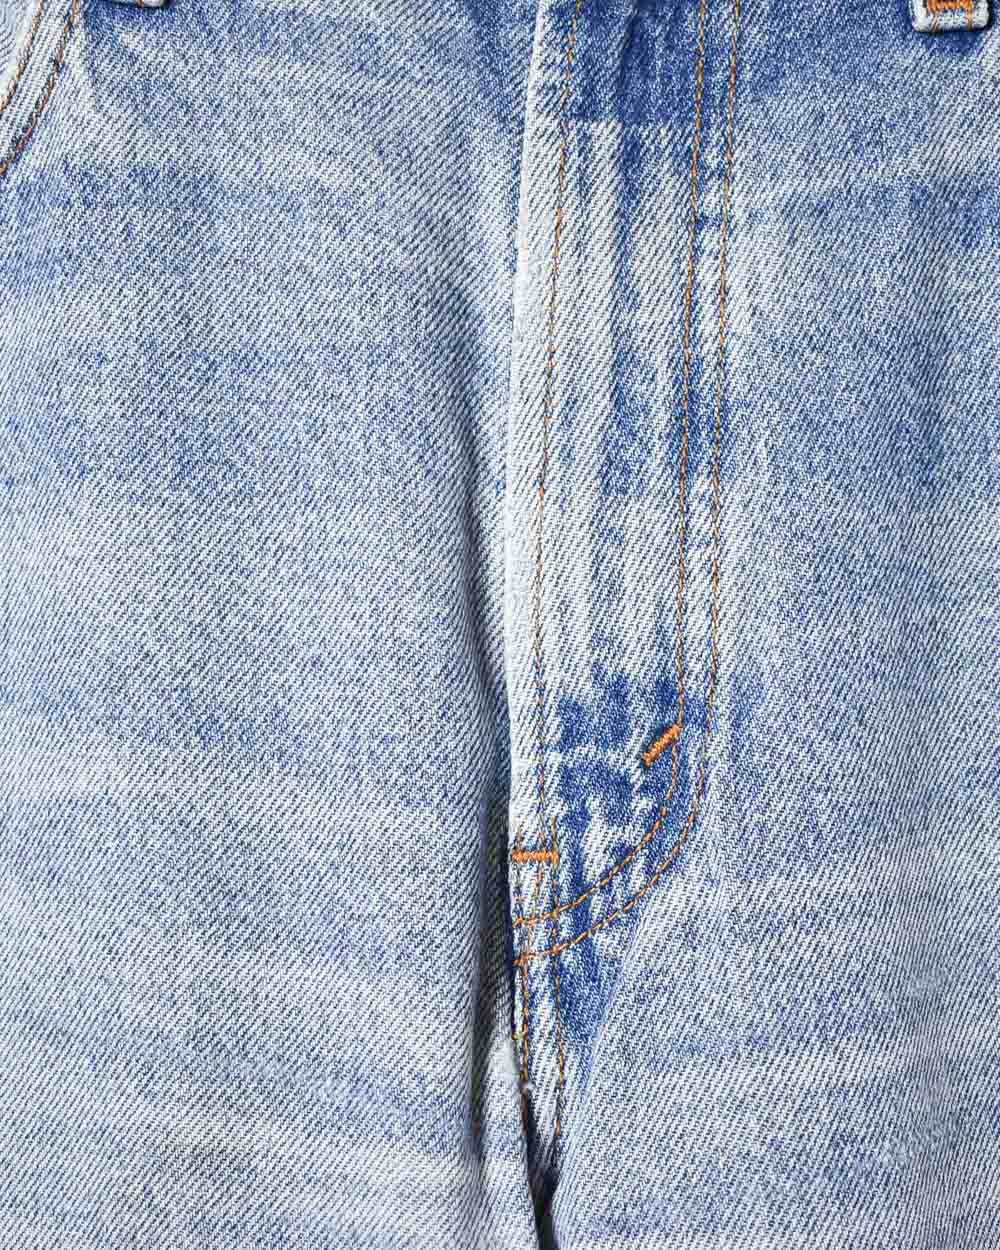 Blue Levi's 505 Jeans - W36 L34